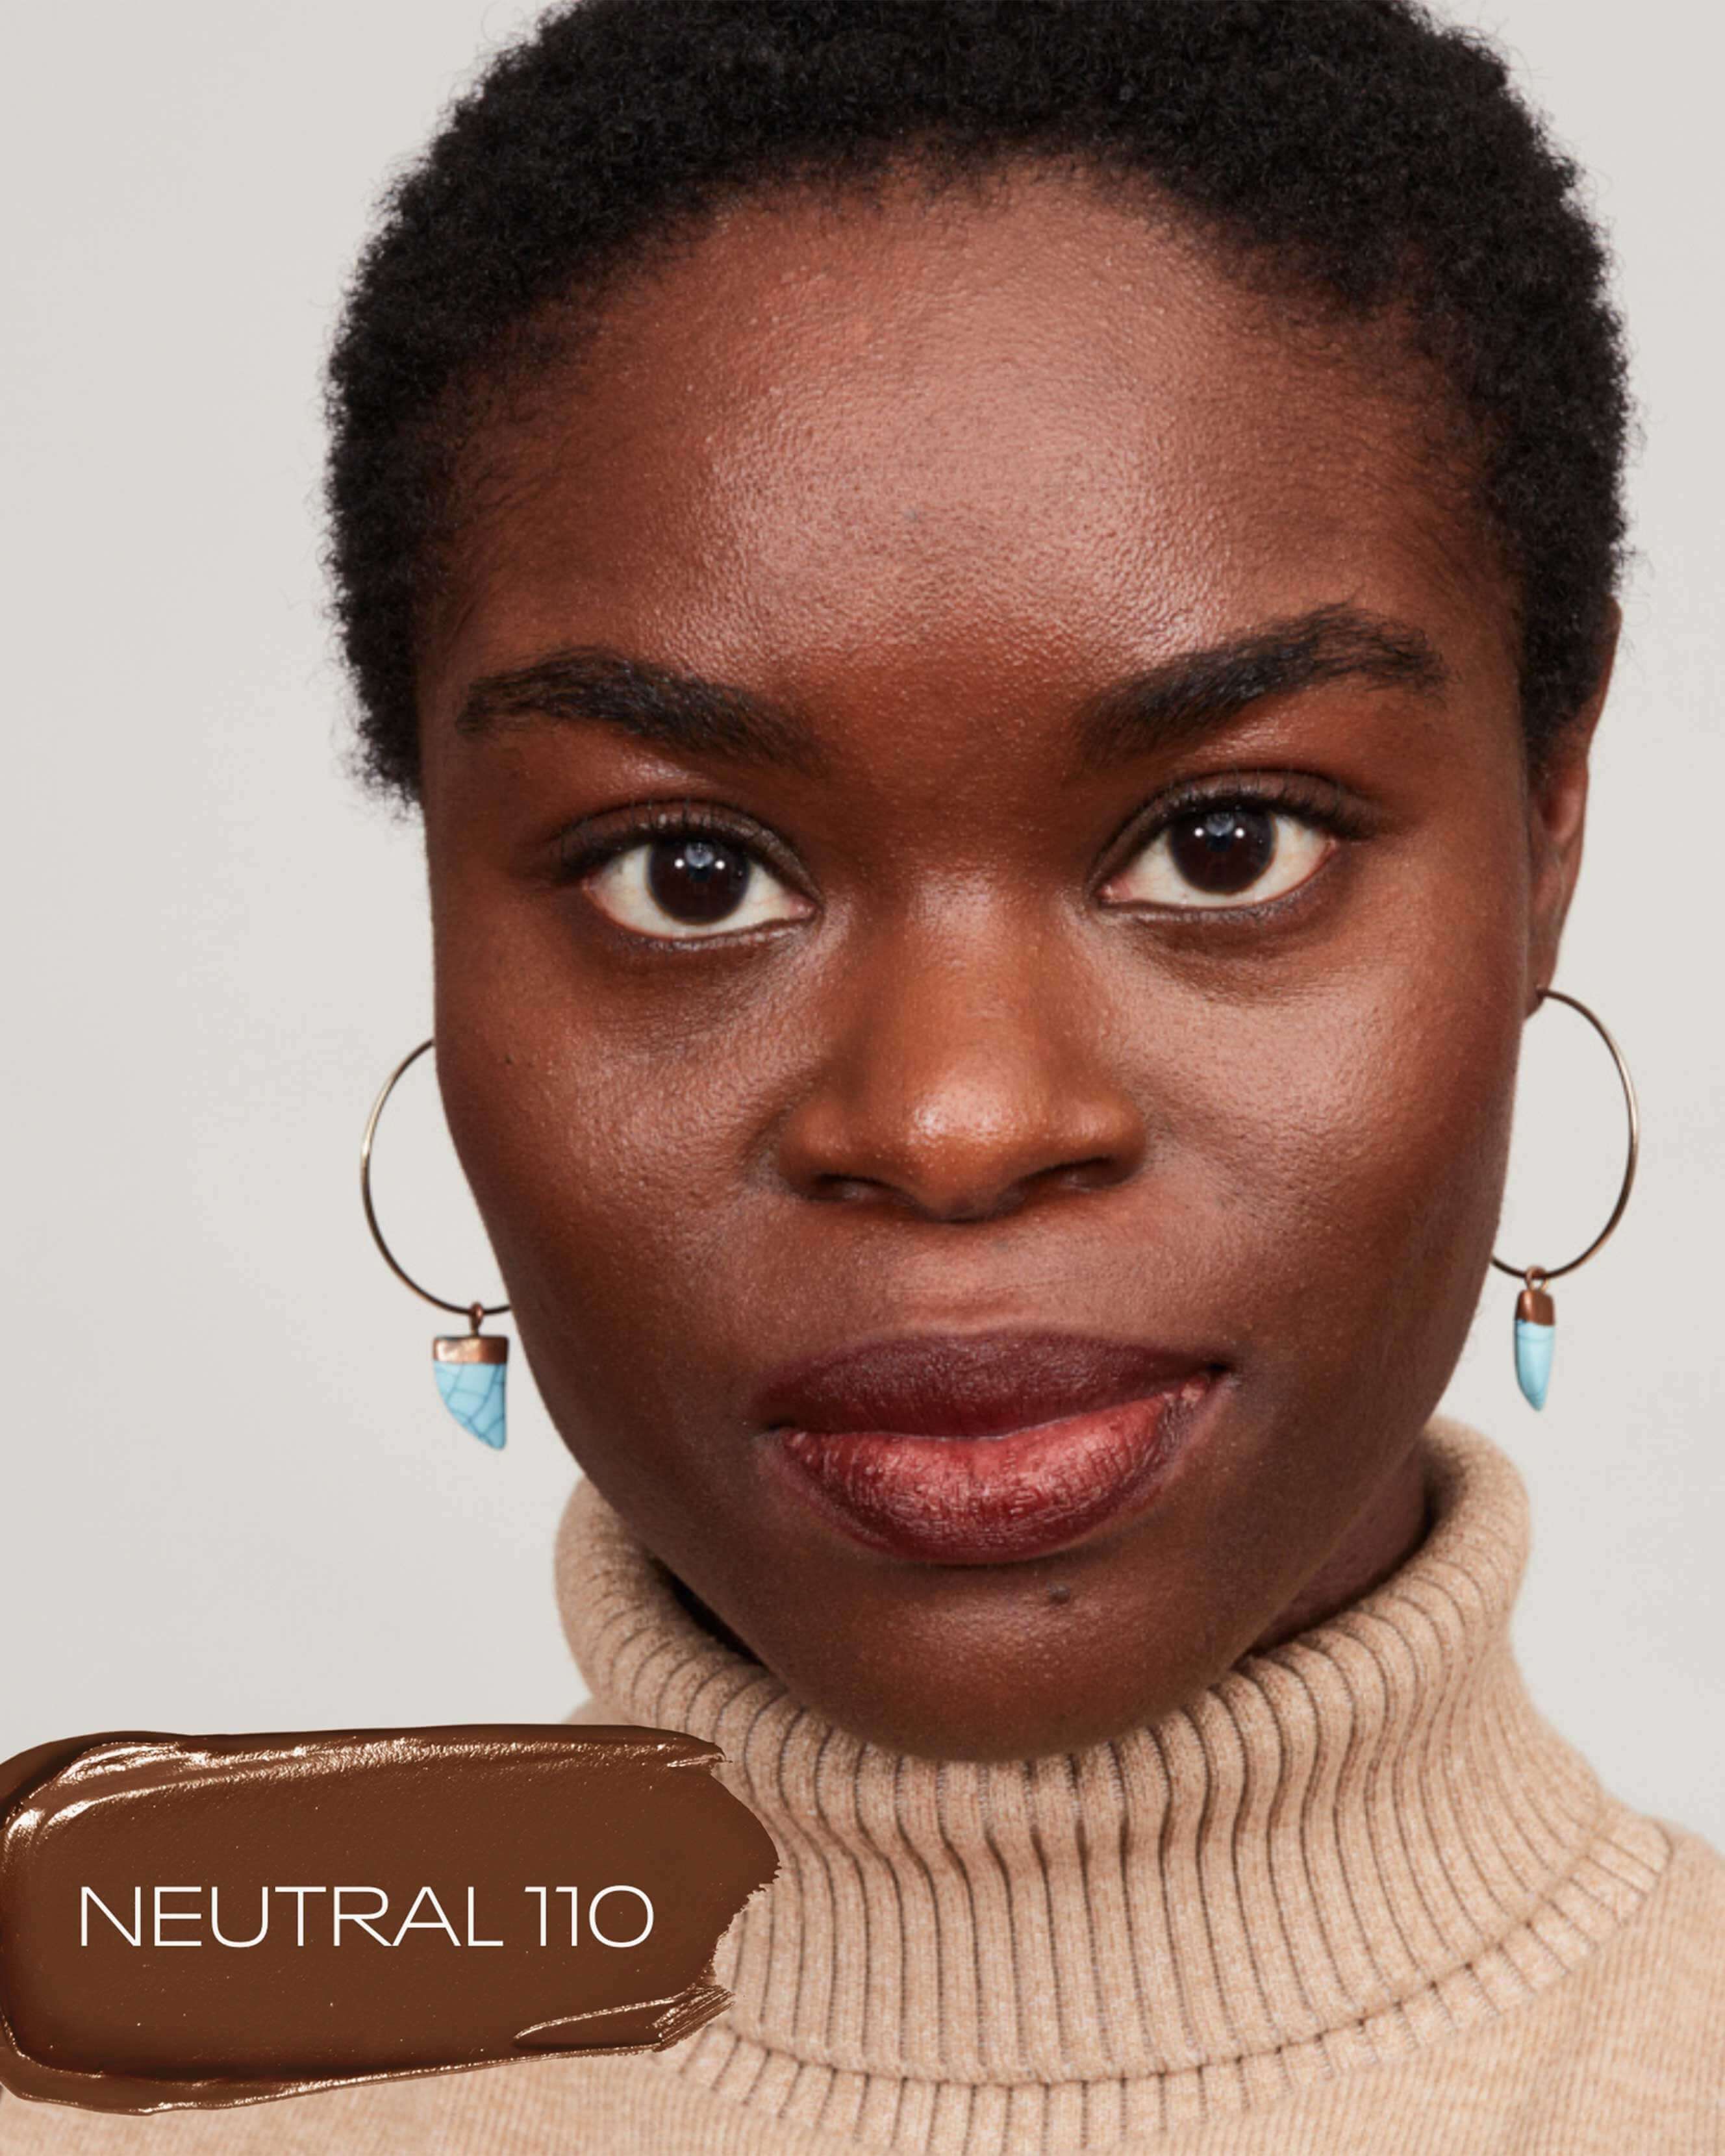 Neutral 110 (deep ebony with neutral undertones)